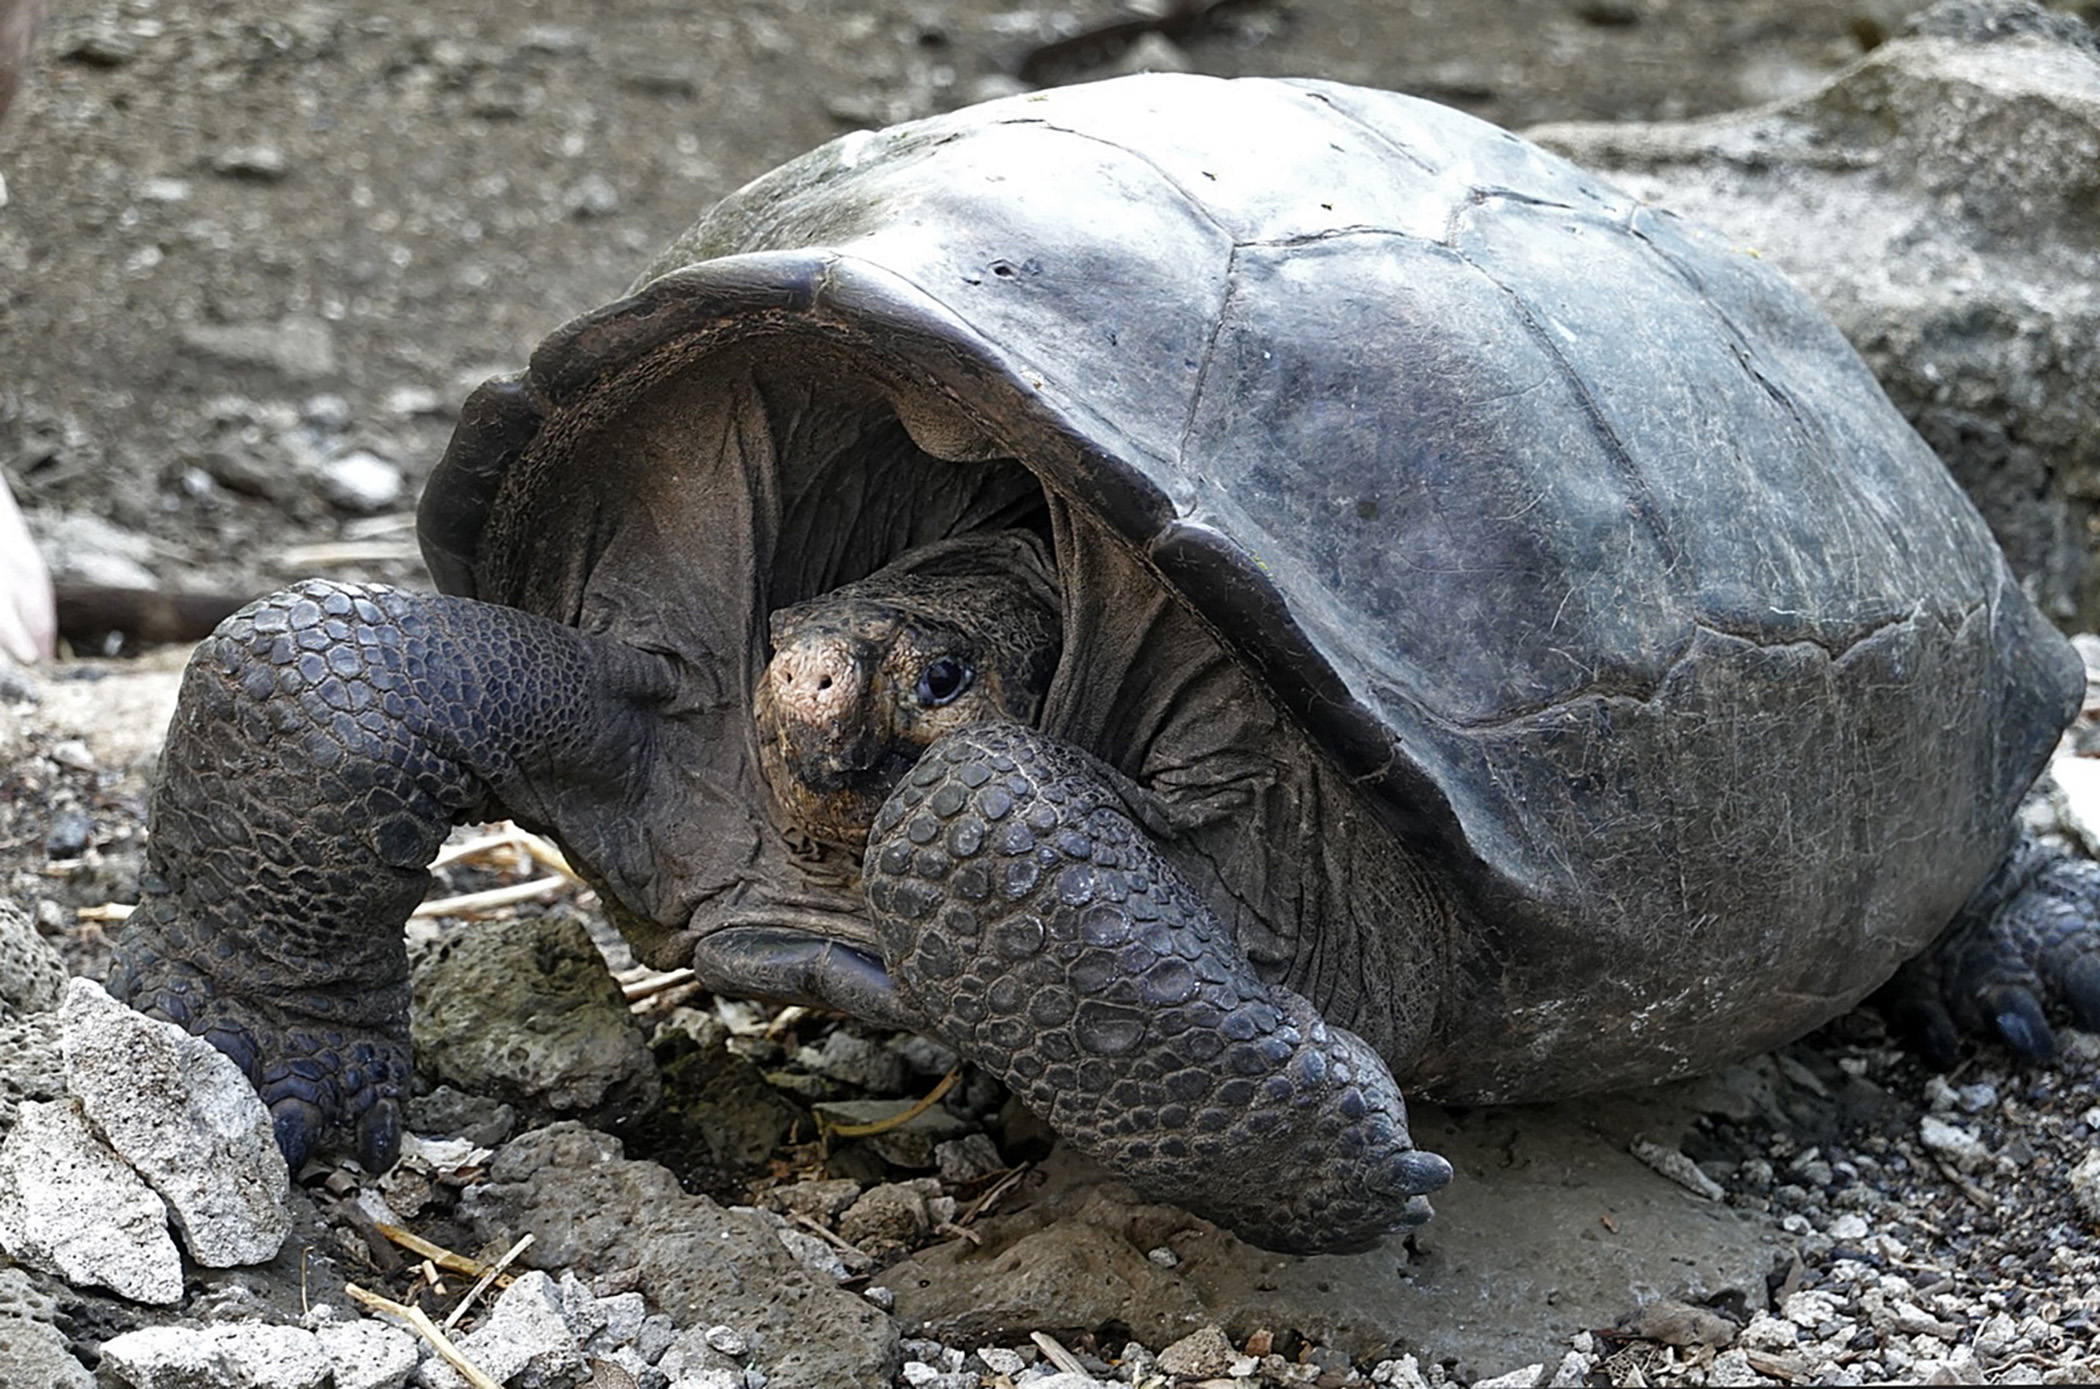 Абингдонские слоновые черепахи. Абингдонская слоновая черепаха. Галапагосская слоновая черепаха. Галапагосские острова черепахи. Гигантская черепаха восмера.